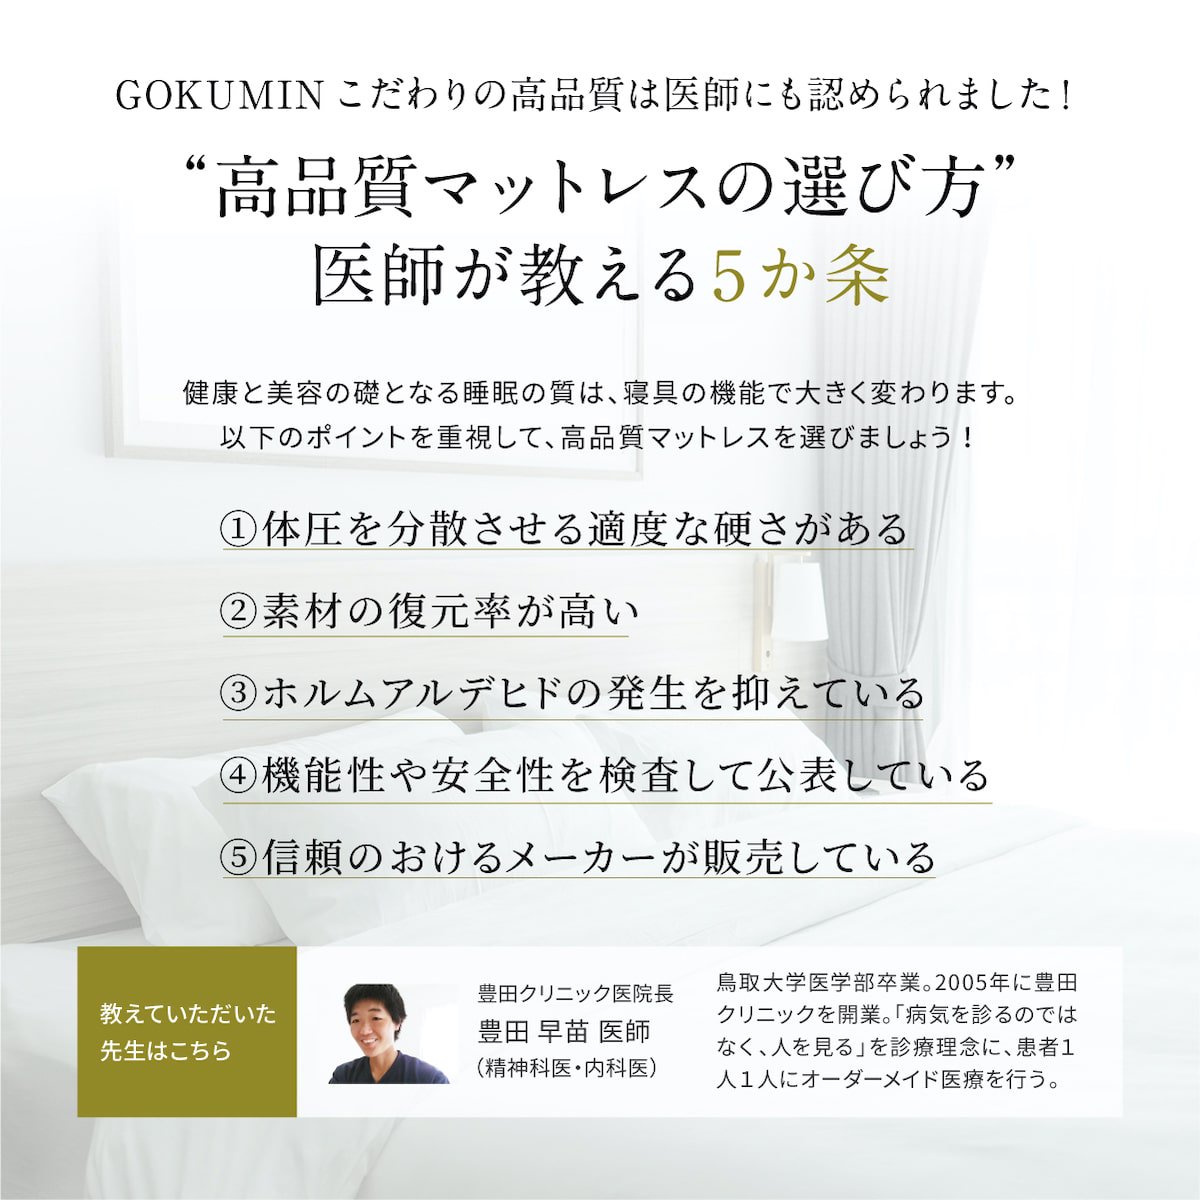 プレミアム低反発マットレス | マットレスであなたの悩みを解決 - GOKUMIN(極眠)